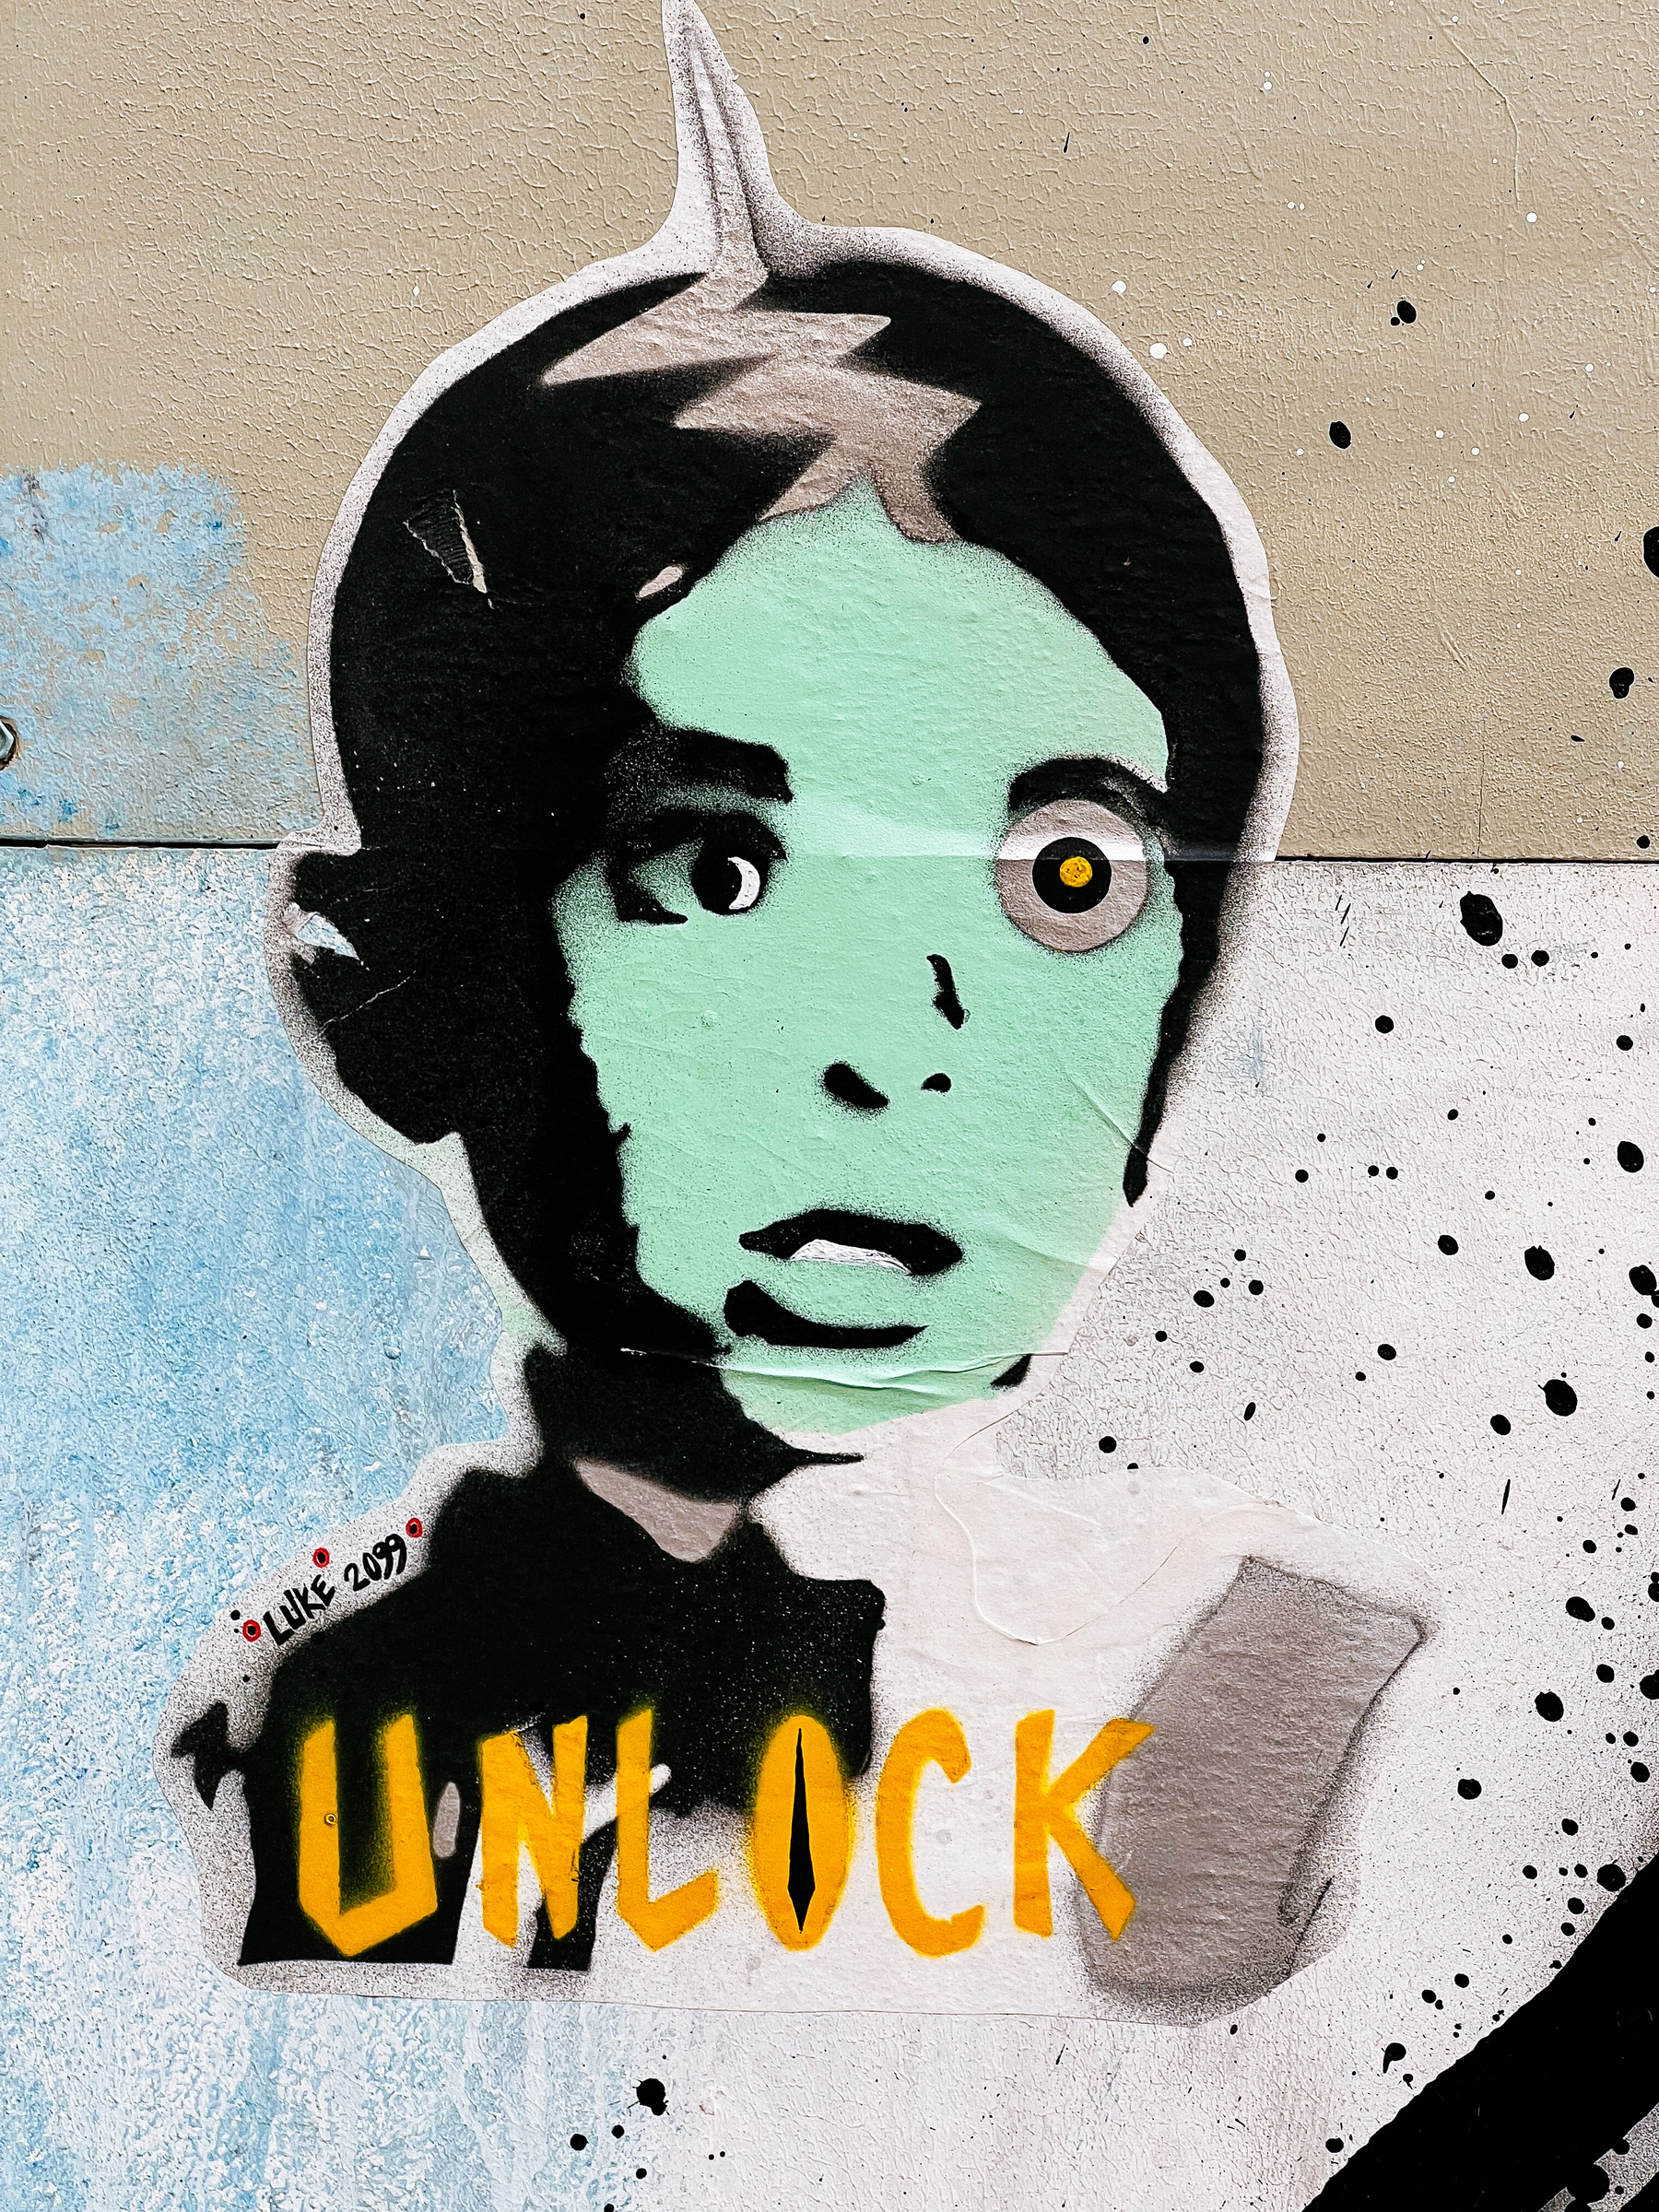 Spooky kid’s face on a sticker, with “unlock” written beneath it. 